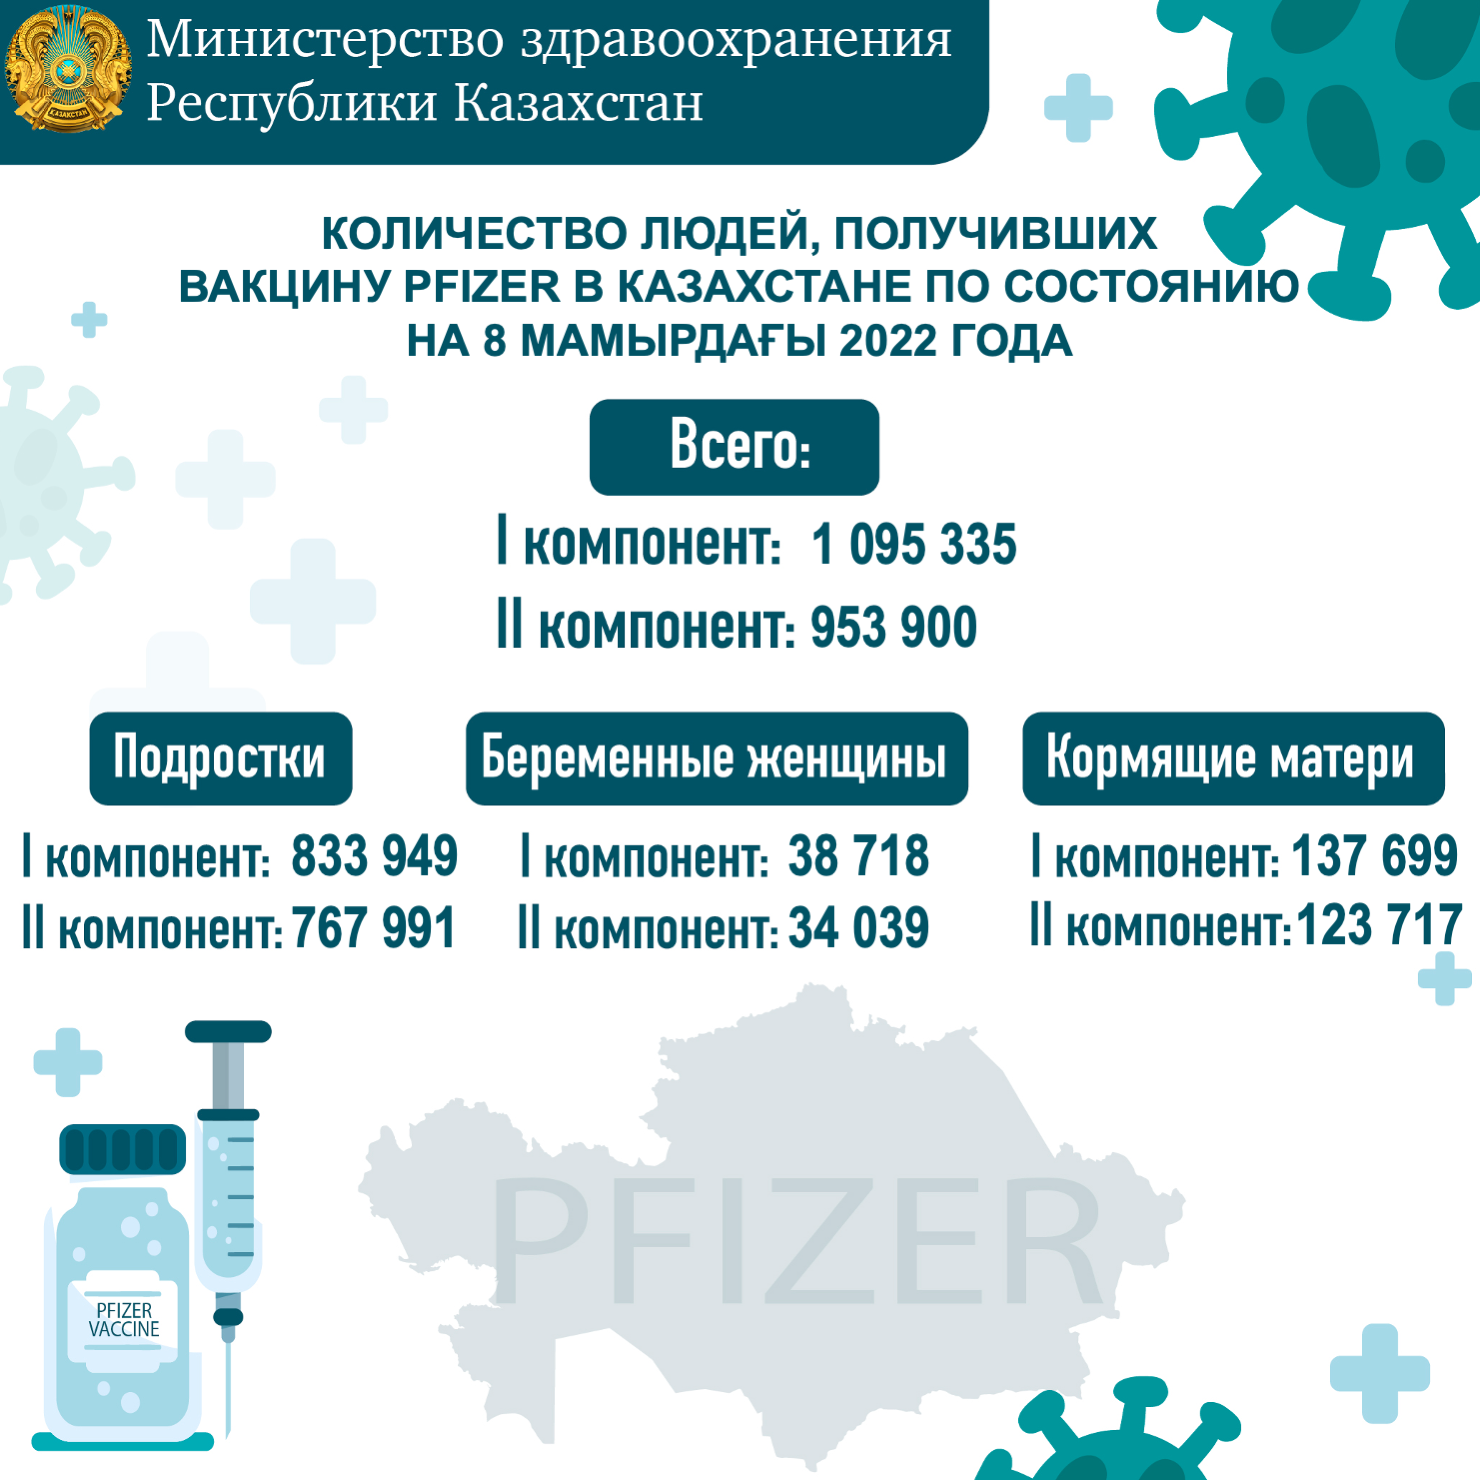 Количество людей, получивших вакцину PFIZER в Казахстане по состоянию на 8 мая 2022 года